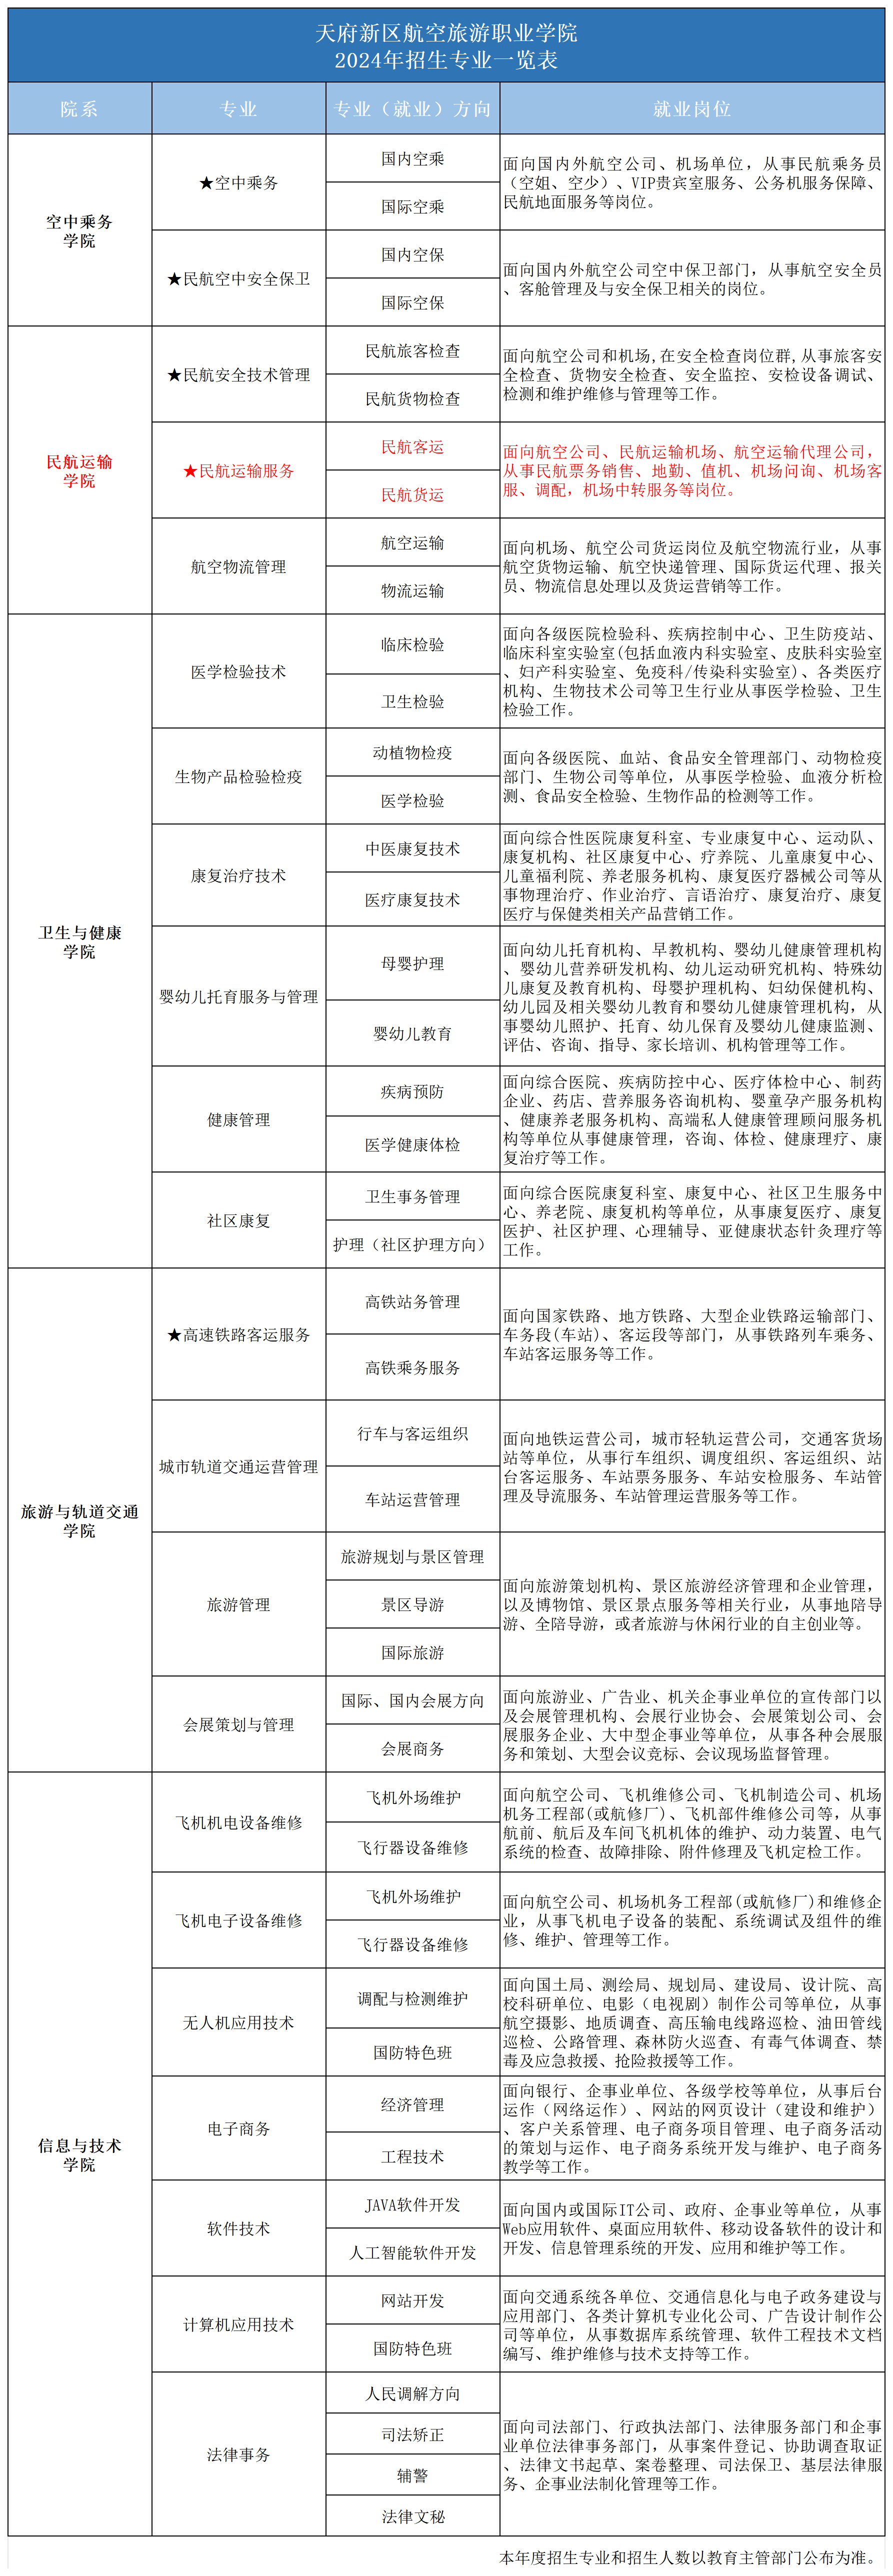 2024专业一览表_2024年招生专业(民运).png